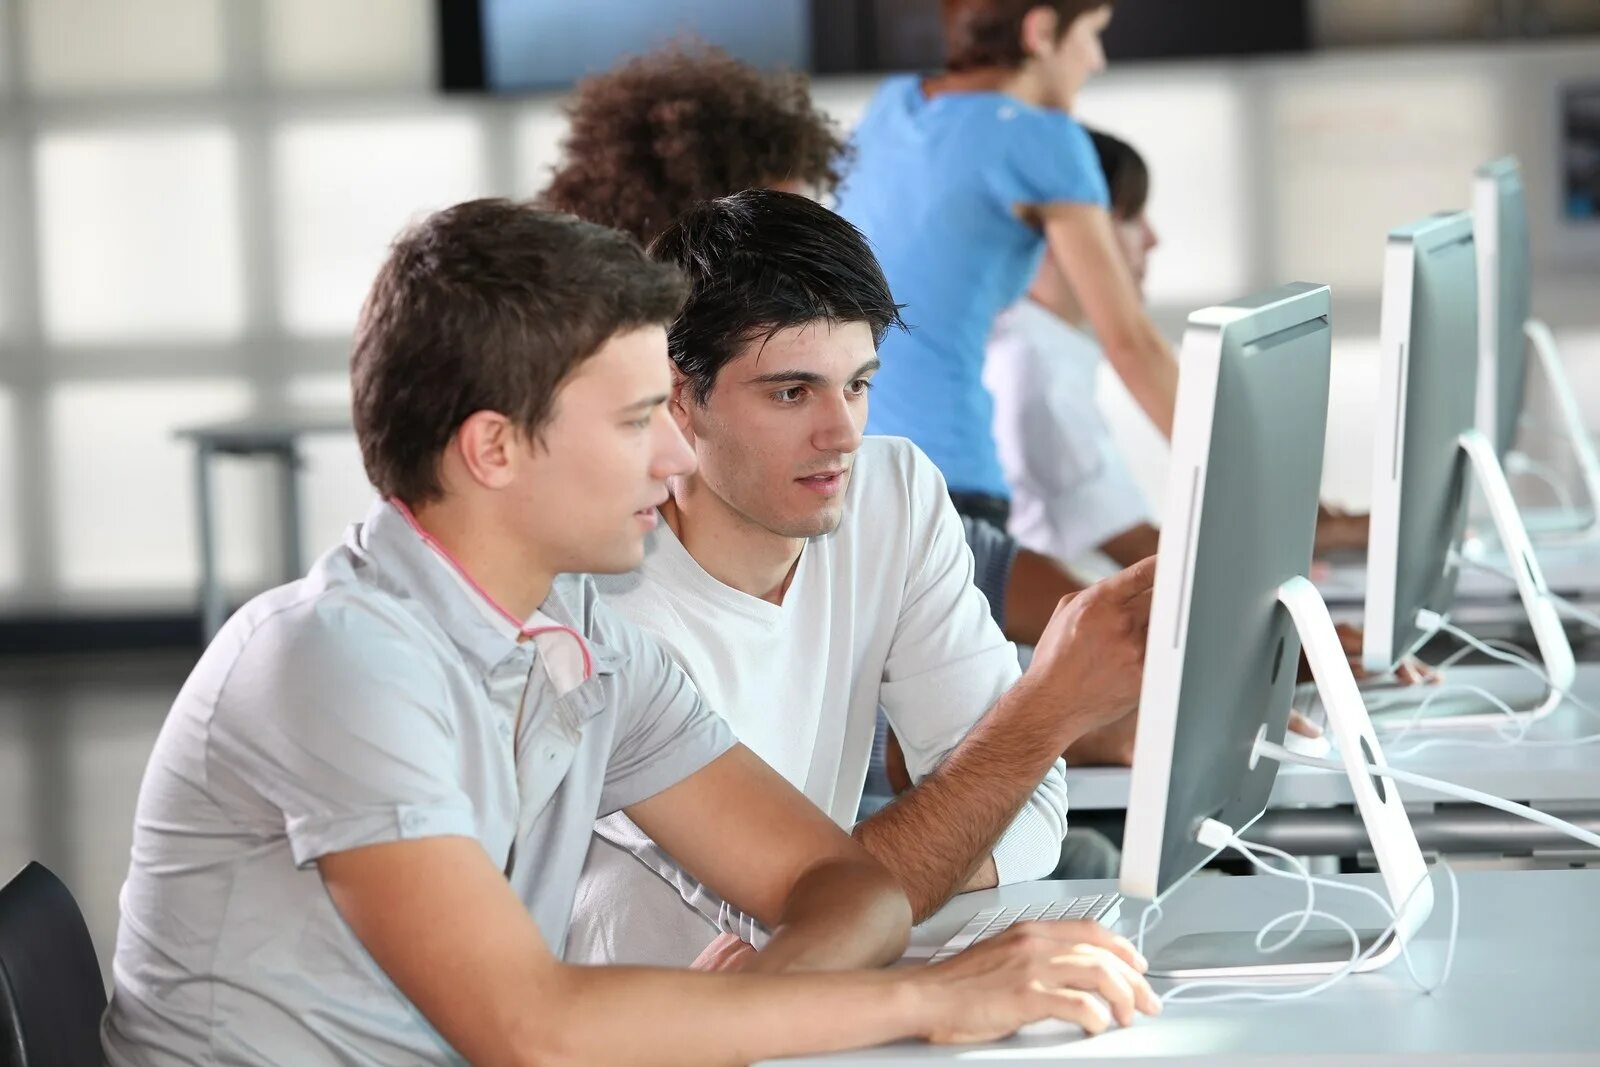 Поступить на второй курс. Человек за компьютером. Студент программист. Компьютер и человек. Подросток за компьютером.